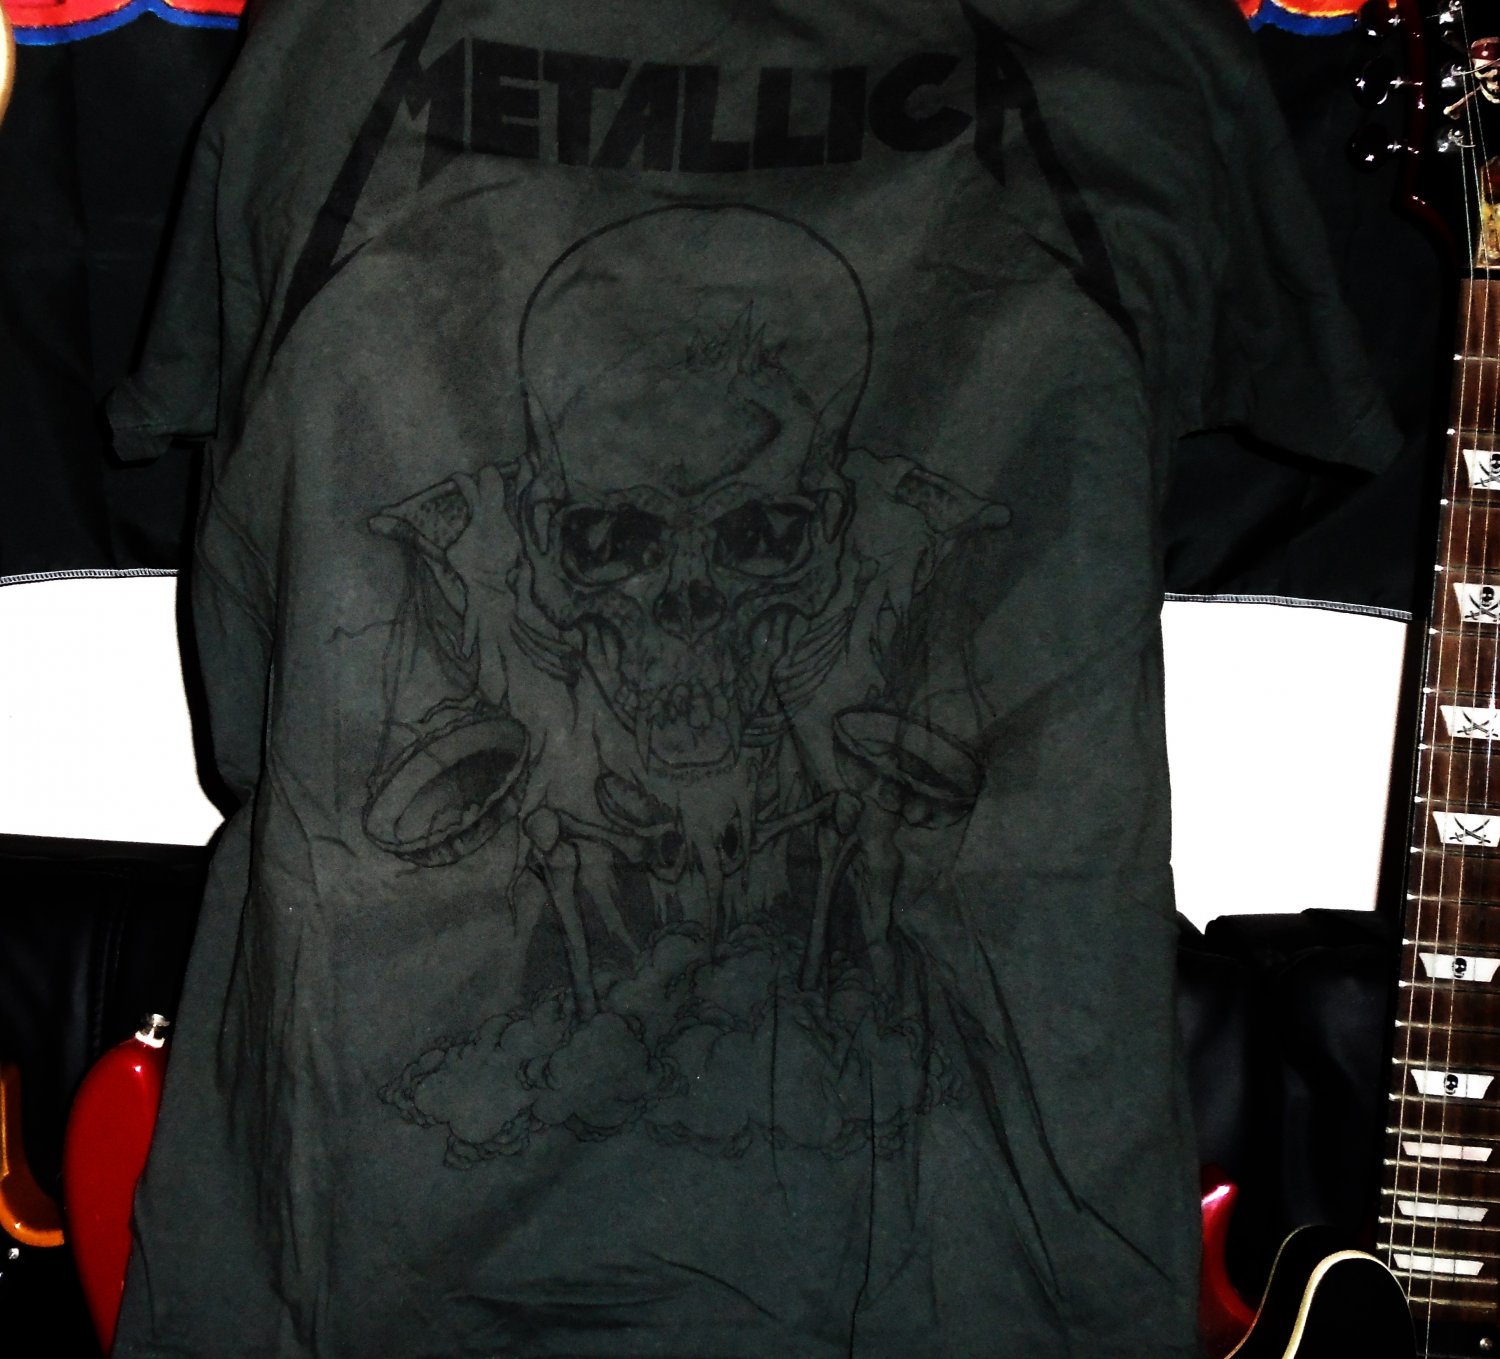 metallica skull xl dark tee with black art in excellent shape - metal hard rock